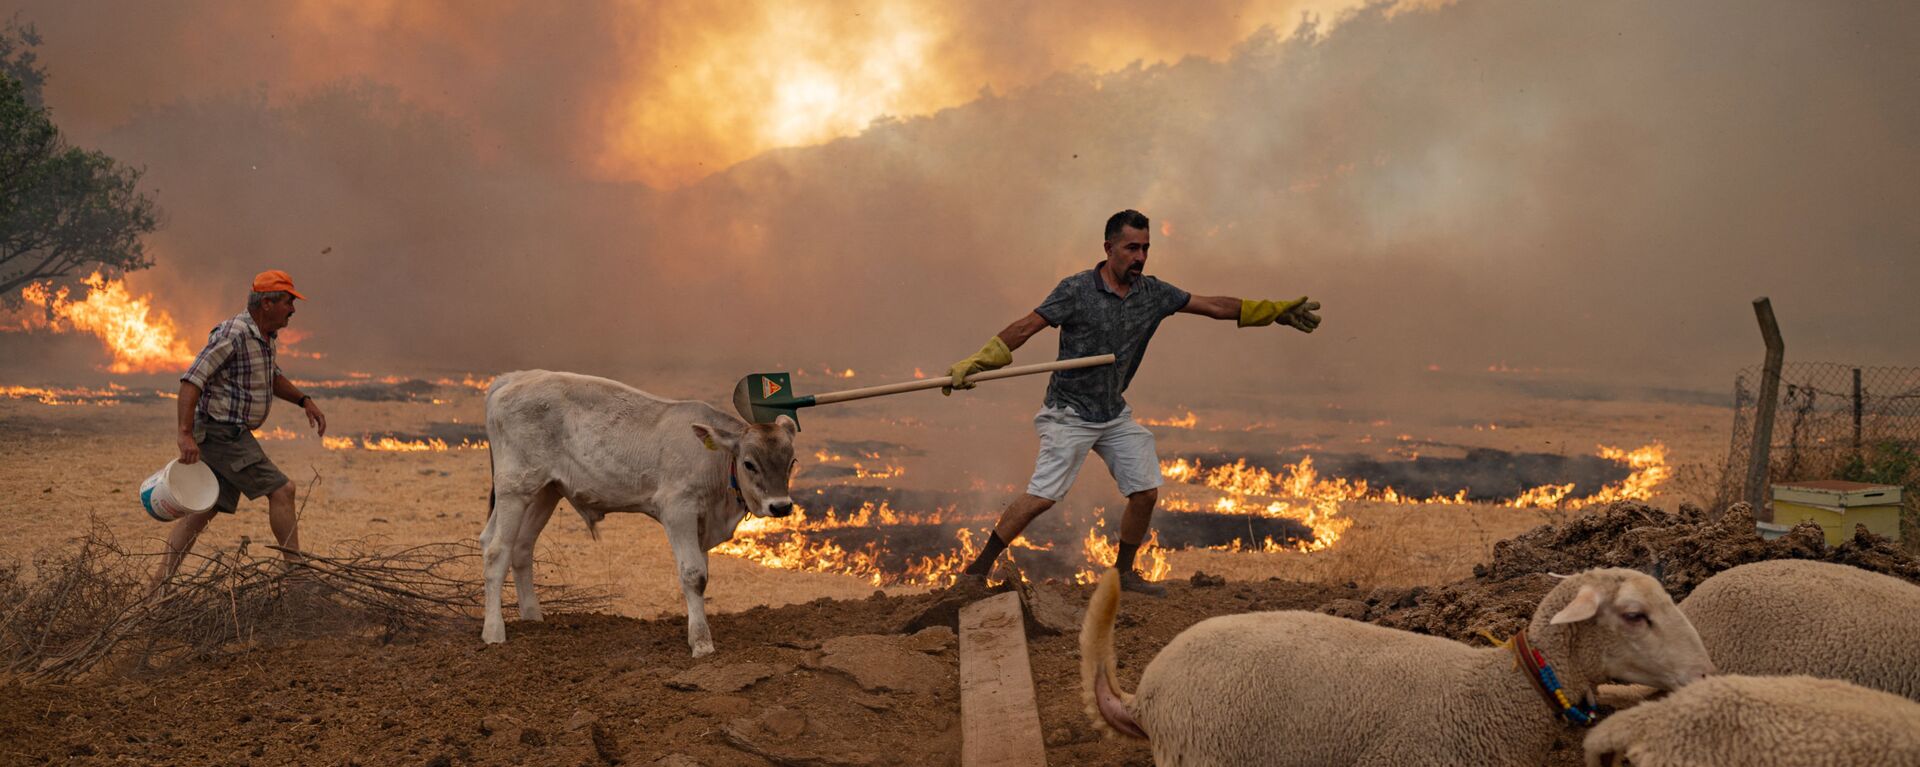 Мужчины со скотом во время природных пожаров в Турции  - Sputnik Латвия, 1920, 03.08.2021